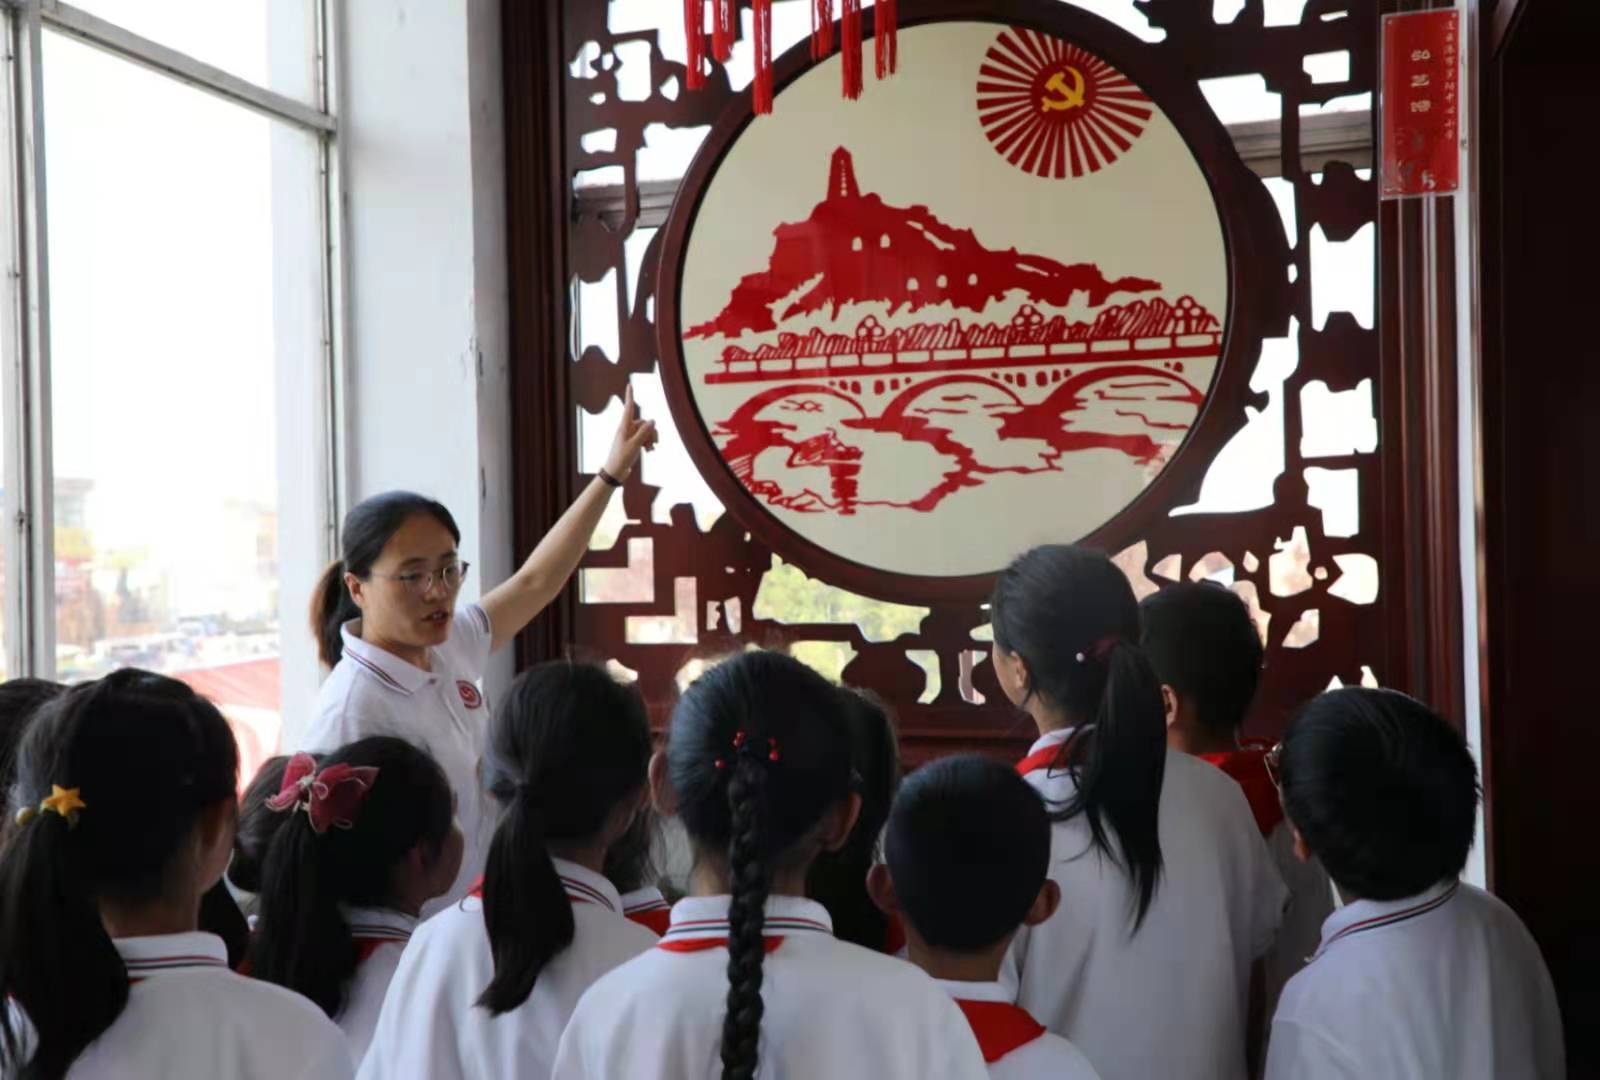 罗阳小学举行“创建文明城市 争做文明学生”演讲比赛 - 赣榆教育在线